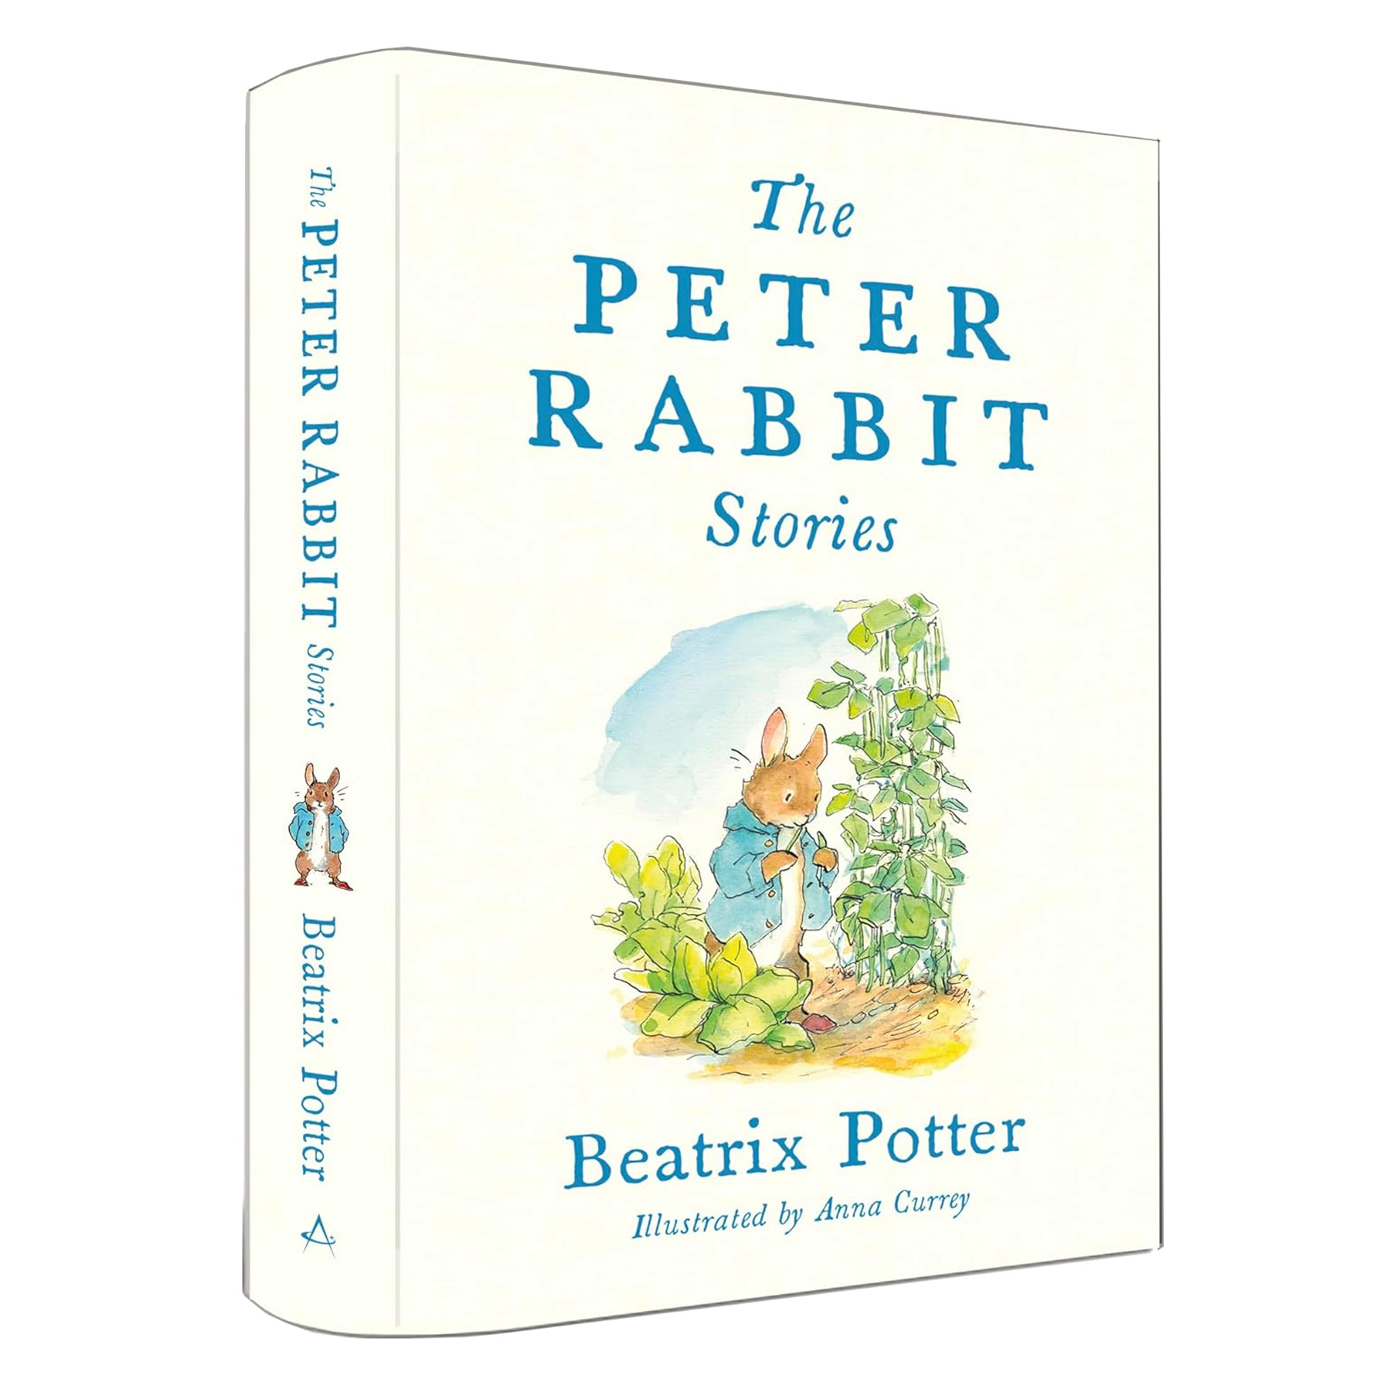 BLOOMSBURY The Peter Rabbit Stories